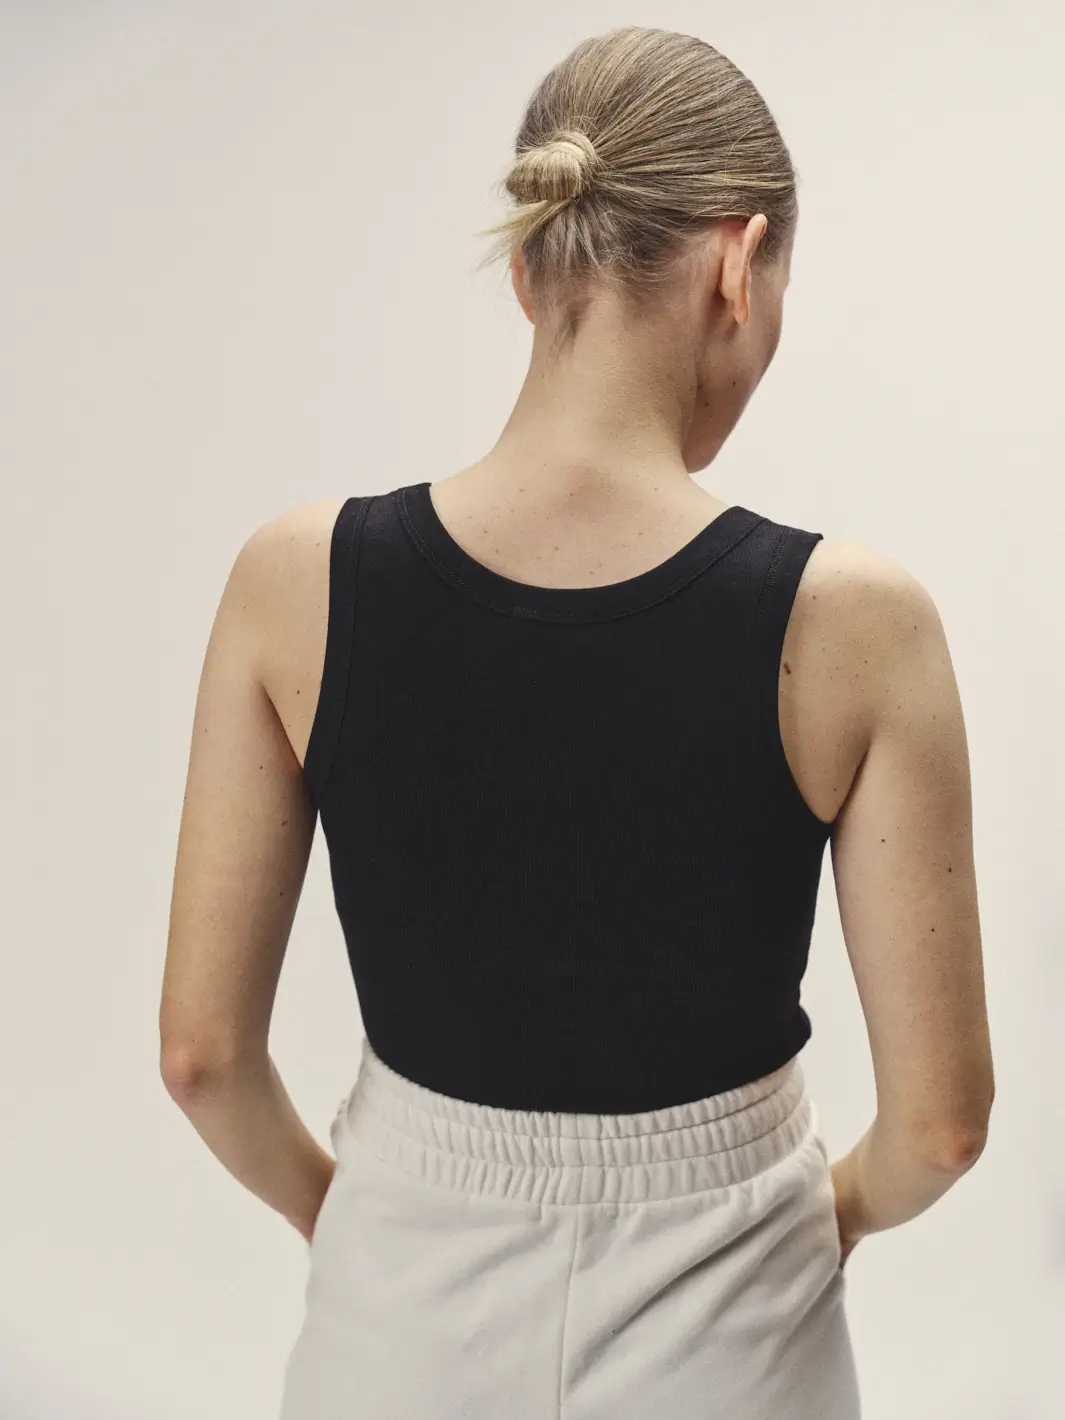 Weibliches Model mit dem Rücken zugewandt, Fokus auf dem schwarzen Top